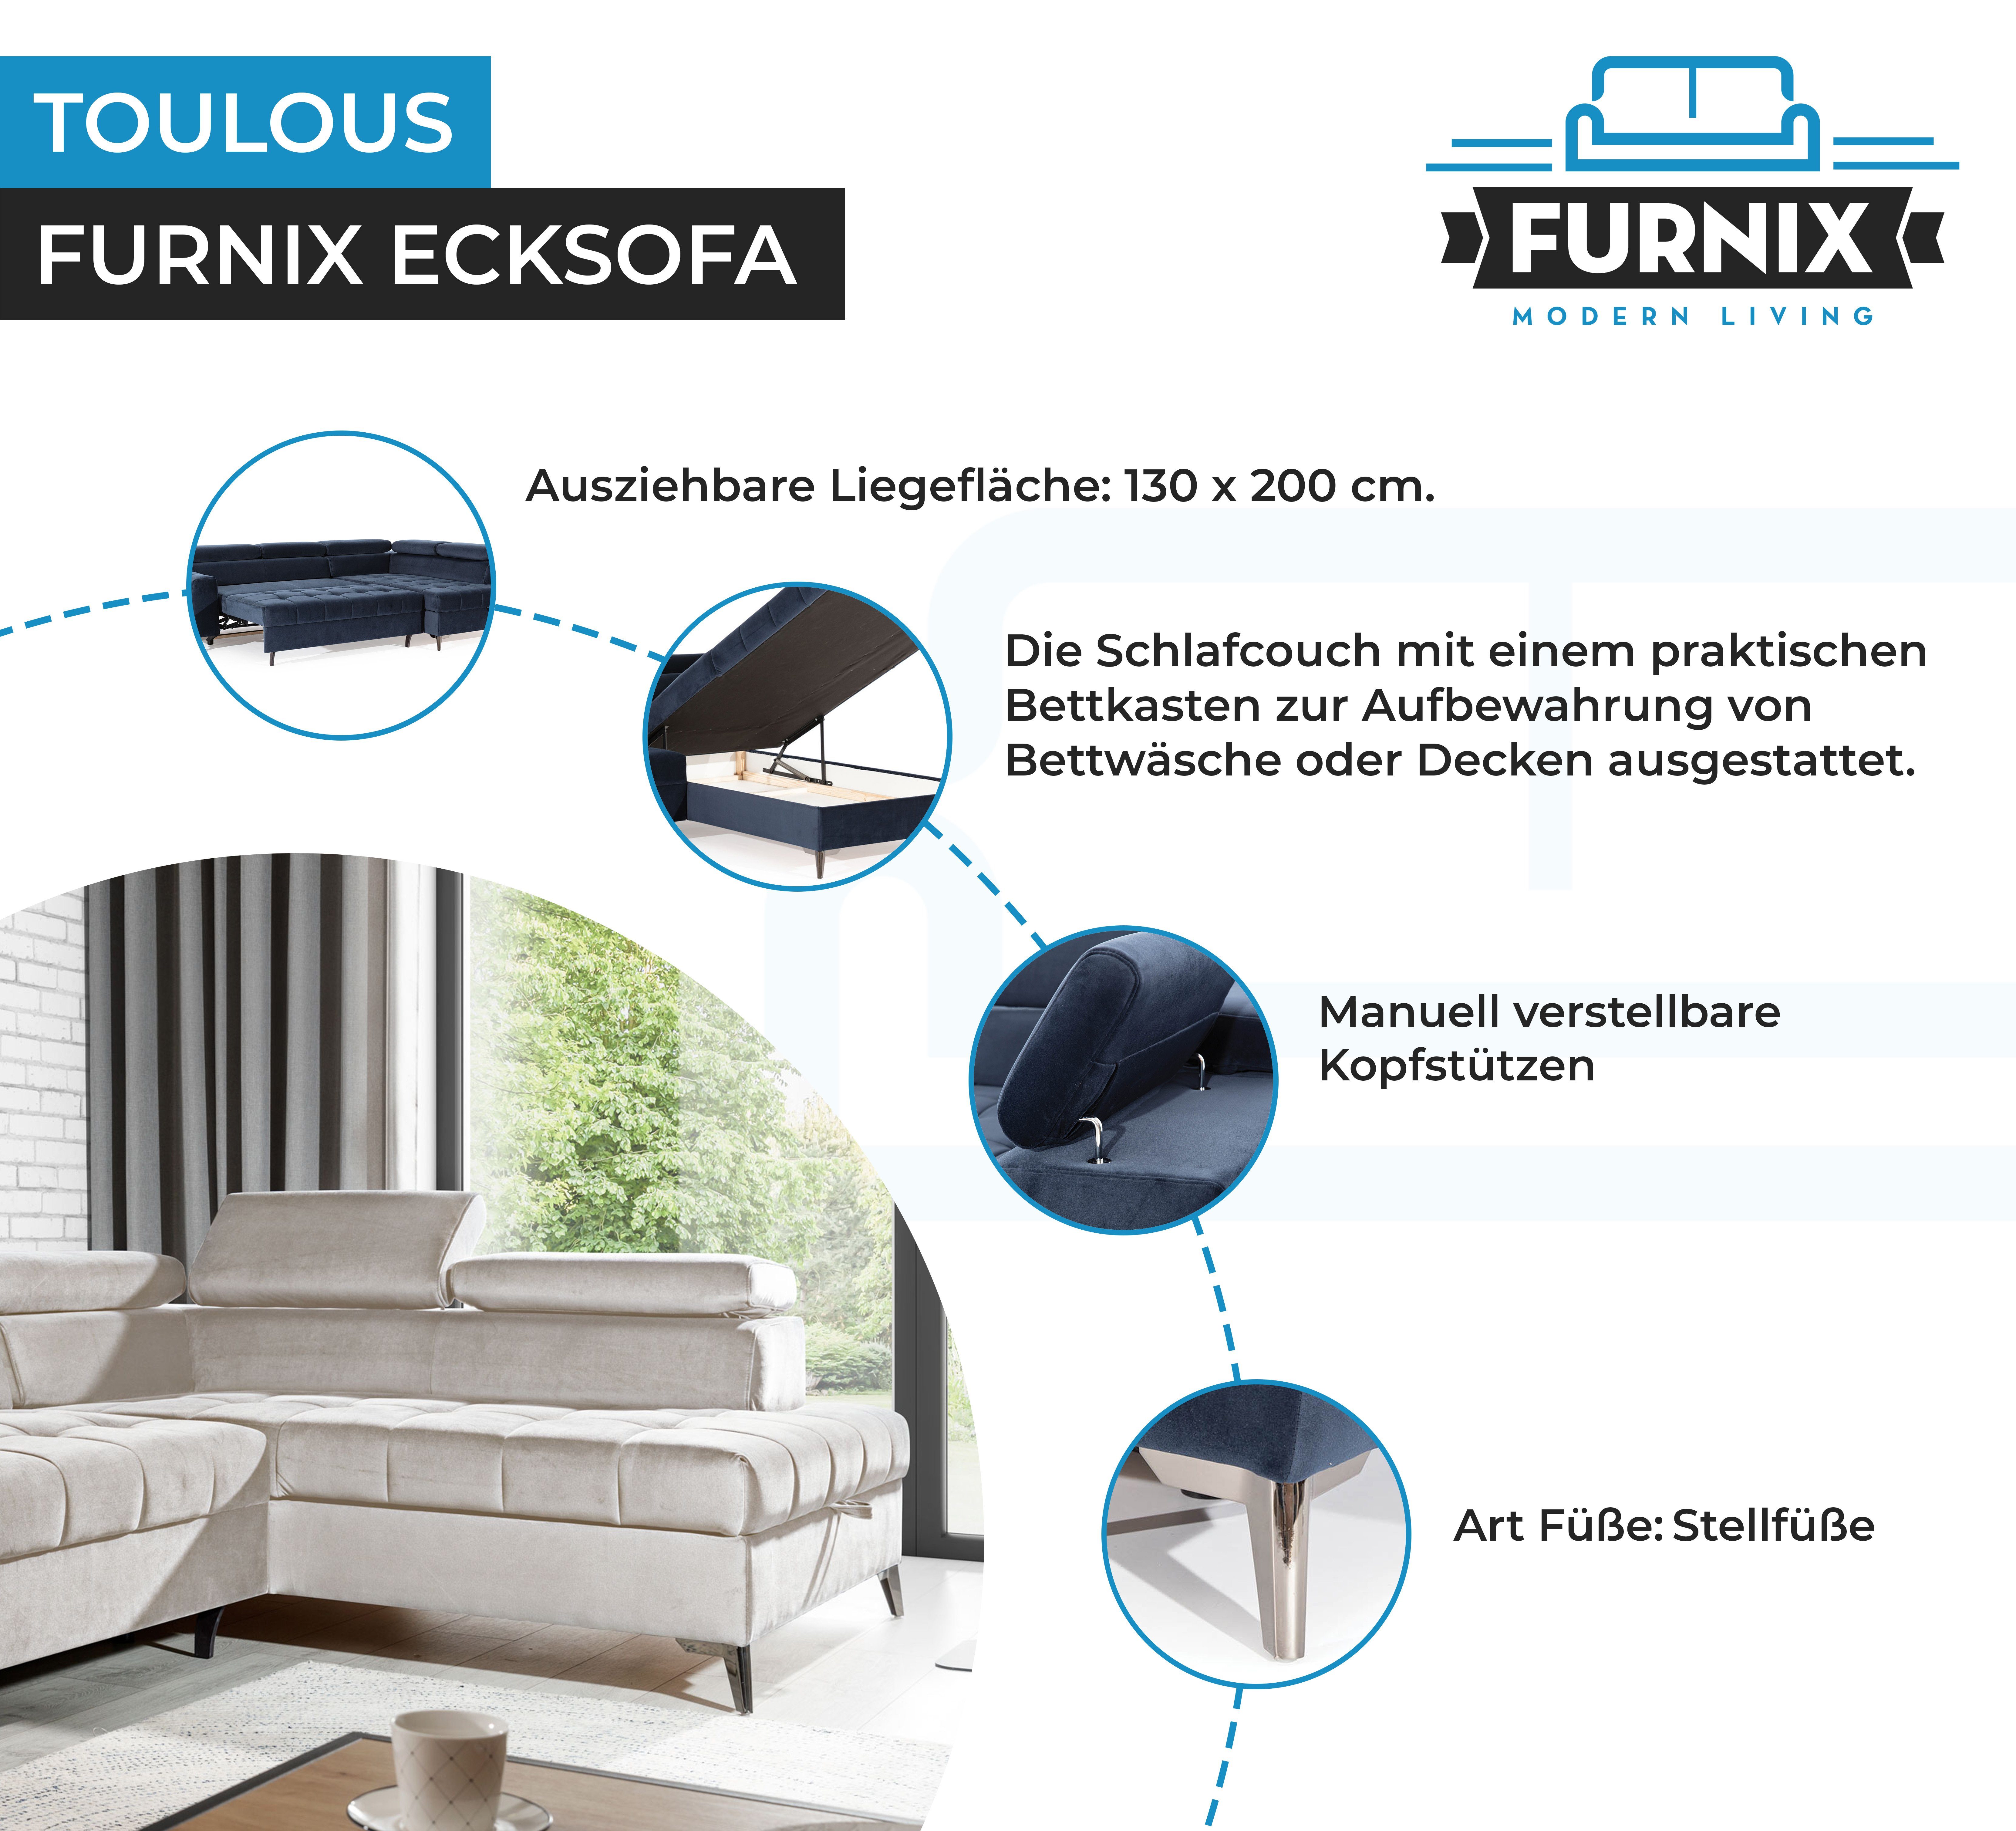 H95 x DL x Automat mit Auswahl, Furnix Creme TOULOUS hochwertige cm B200 Ecksofa Schlaffunktion B275 Sofa Verarbeitung Maße: